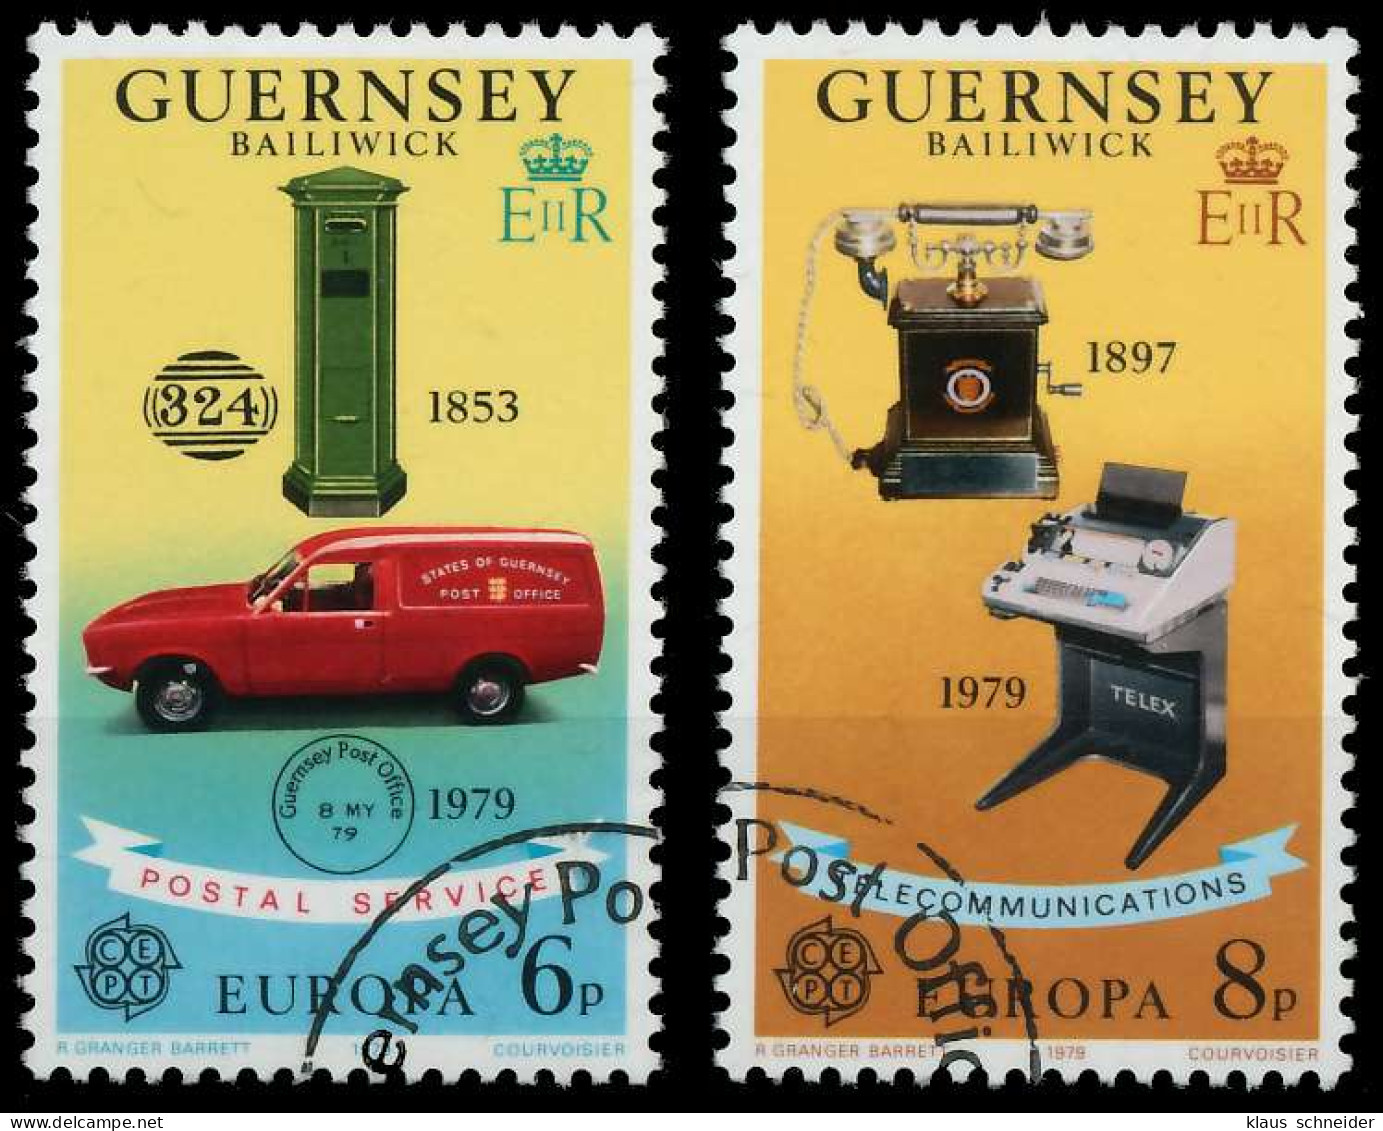 GUERNSEY 1979 Nr 189-190 Gestempelt X58D132 - Guernesey